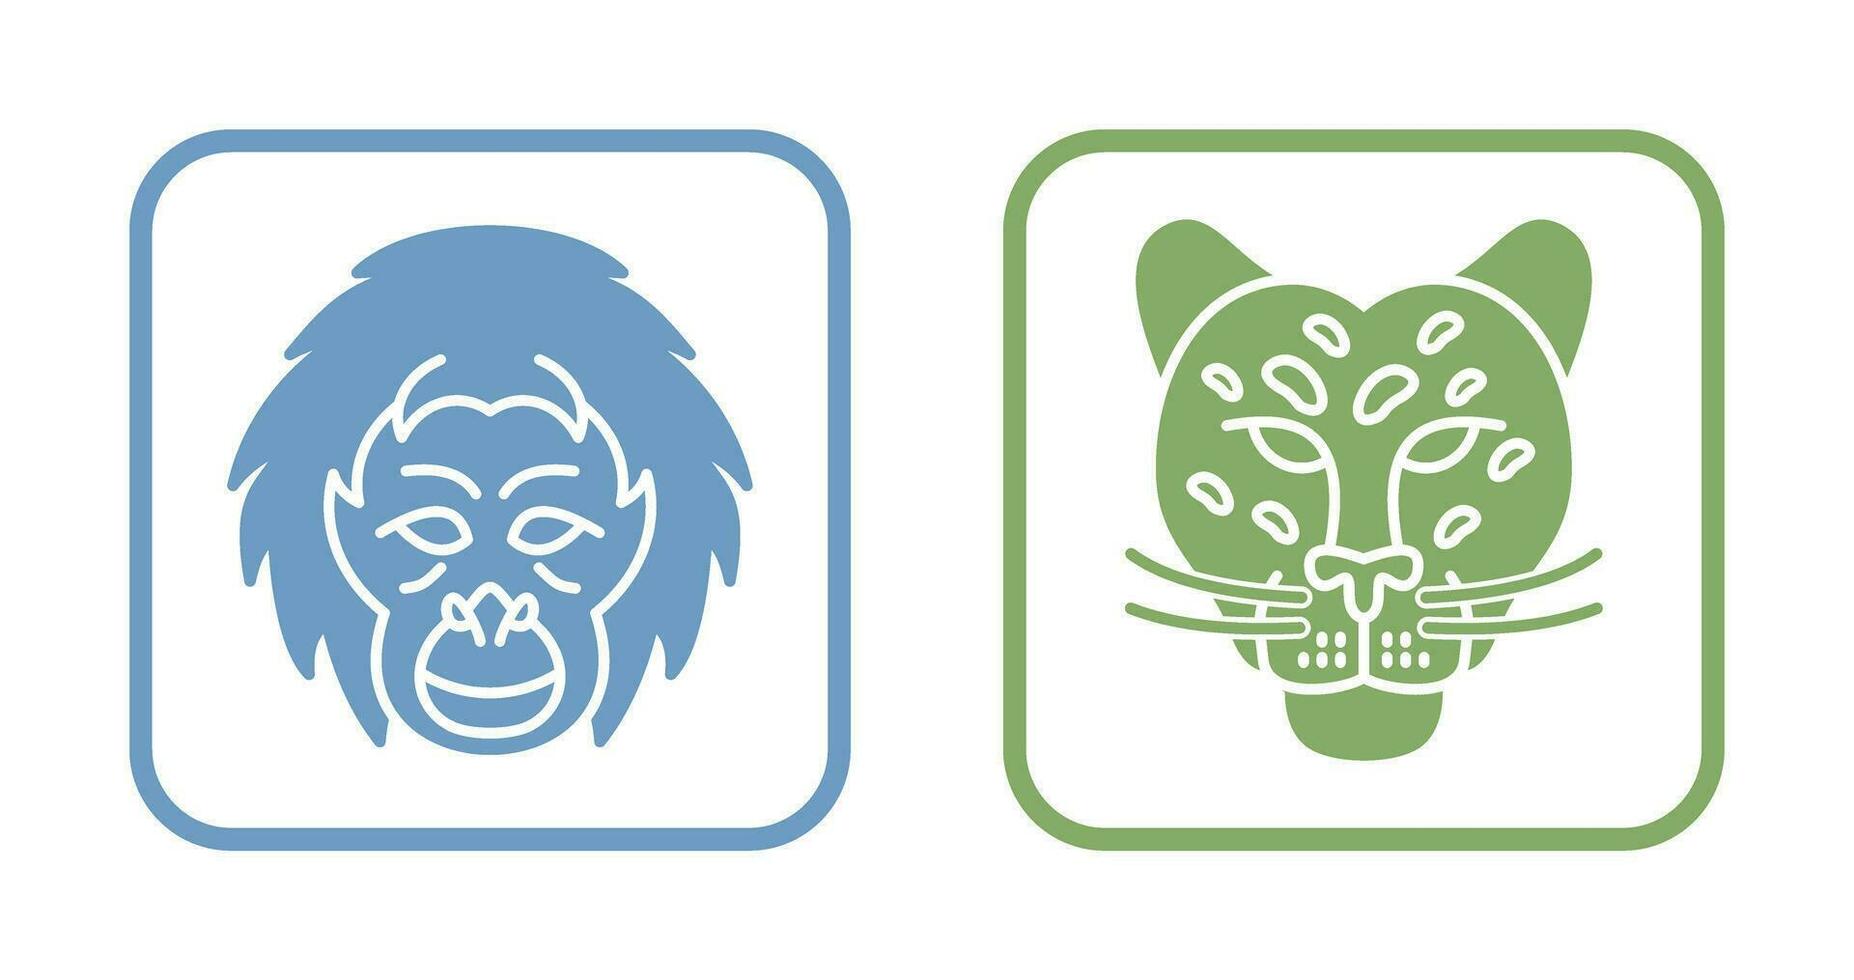 orangutang och farlig ikon vektor